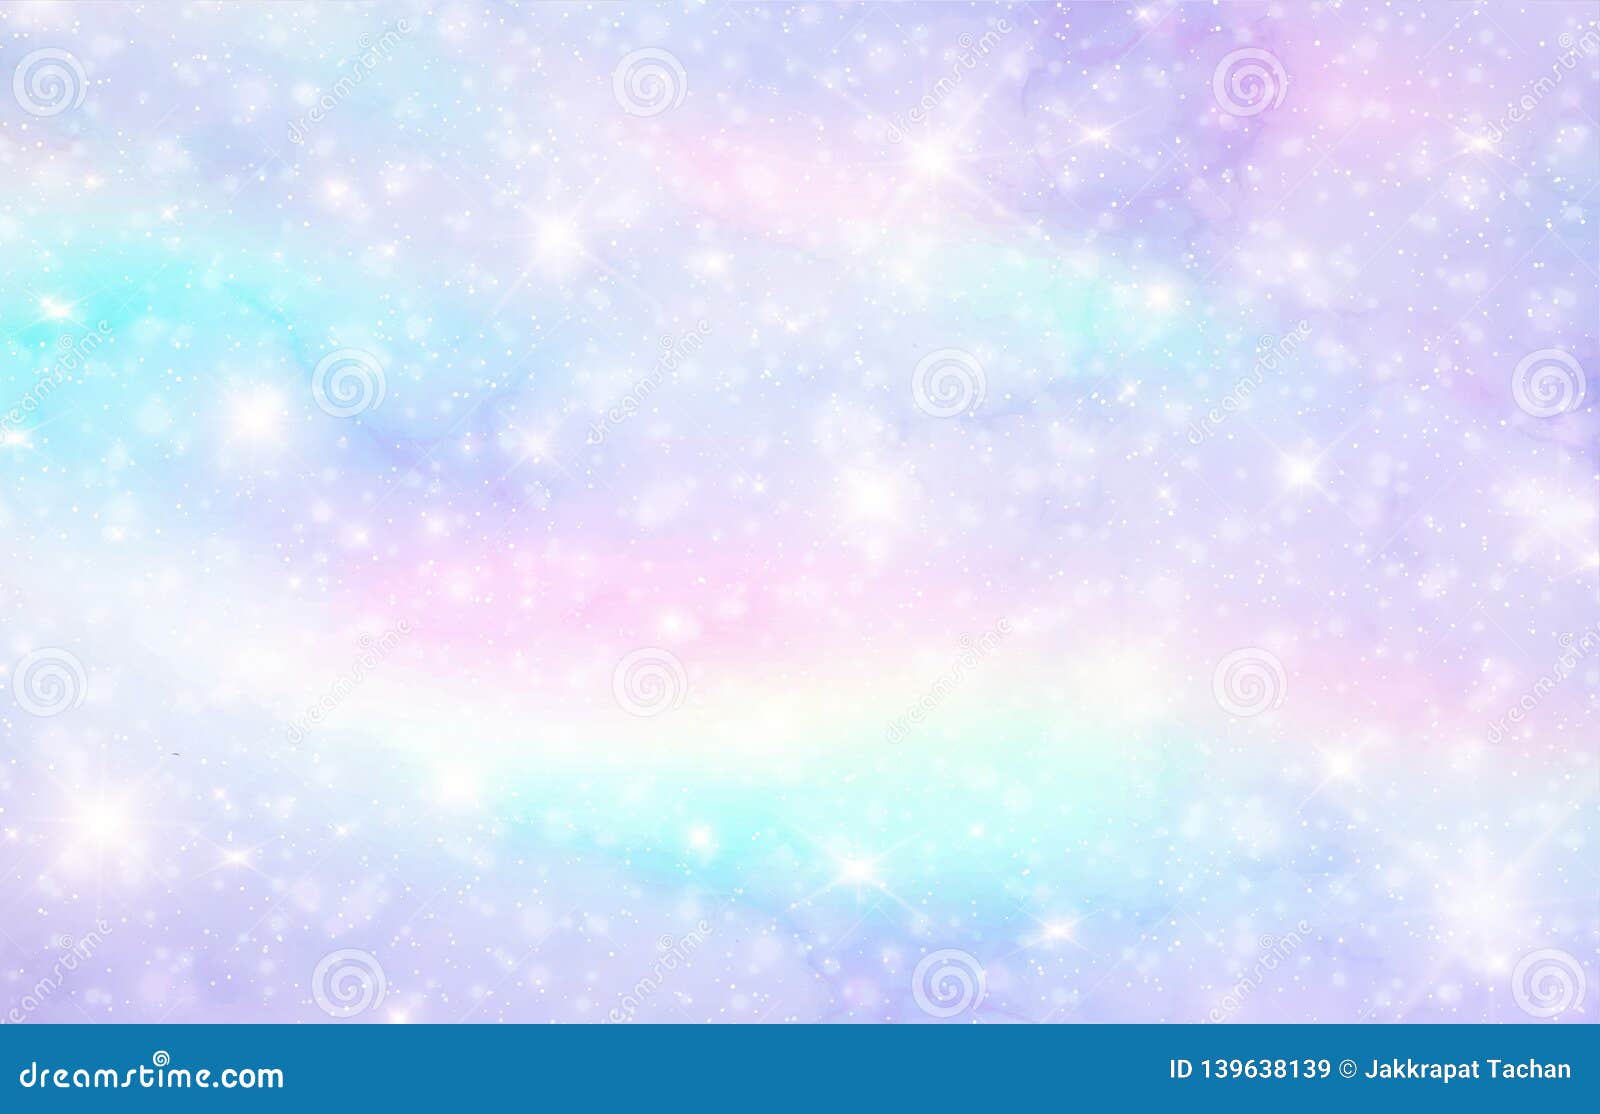 Fondo De Galaxia Acuarela Azul Rosa Abstracto Color Pastel Del Arco Iris  De Fantasía Nube De Cielo De Acuarela Vectorial Patrón De Brillo De  Mármol Textura De Unicornio Estrella Holográfica Royalty Free